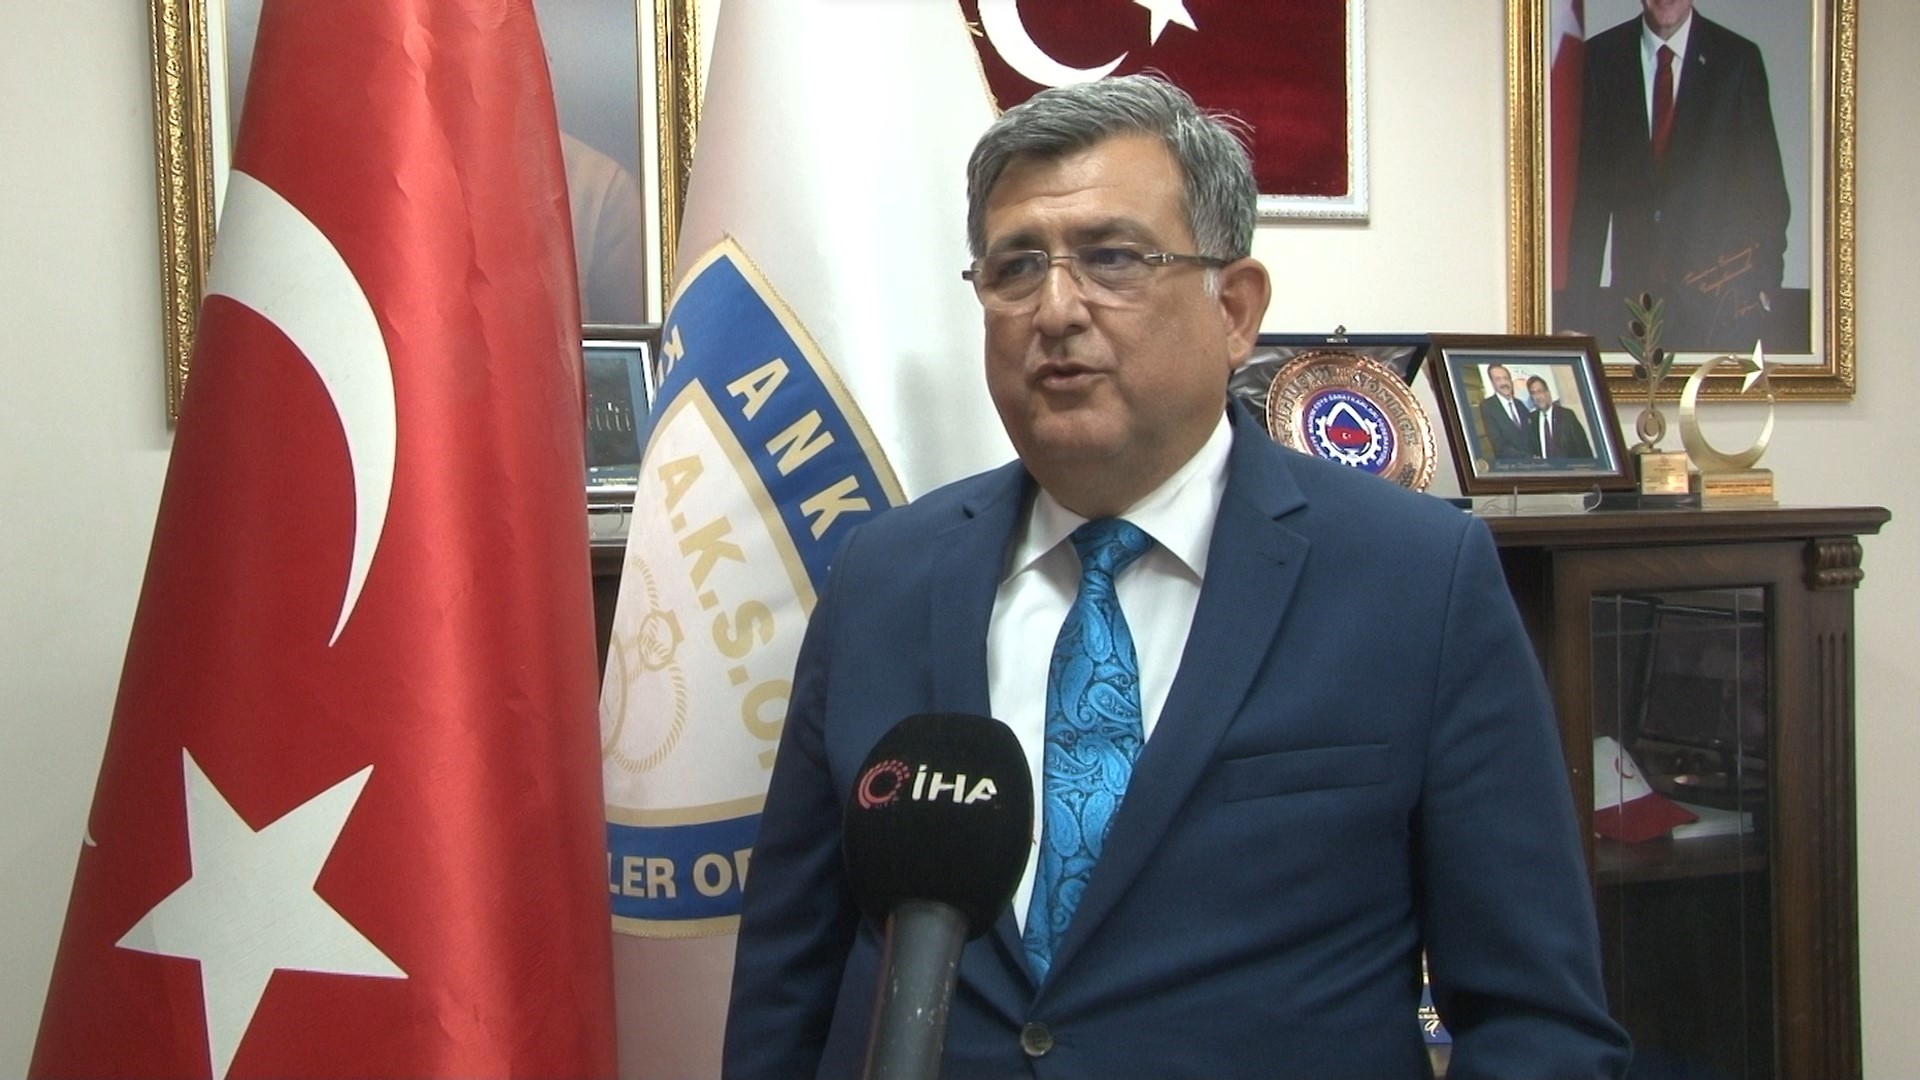 Ankara Kuyumcular Odası Başkanı Sönmez: “Altından her zaman kar edersiniz”